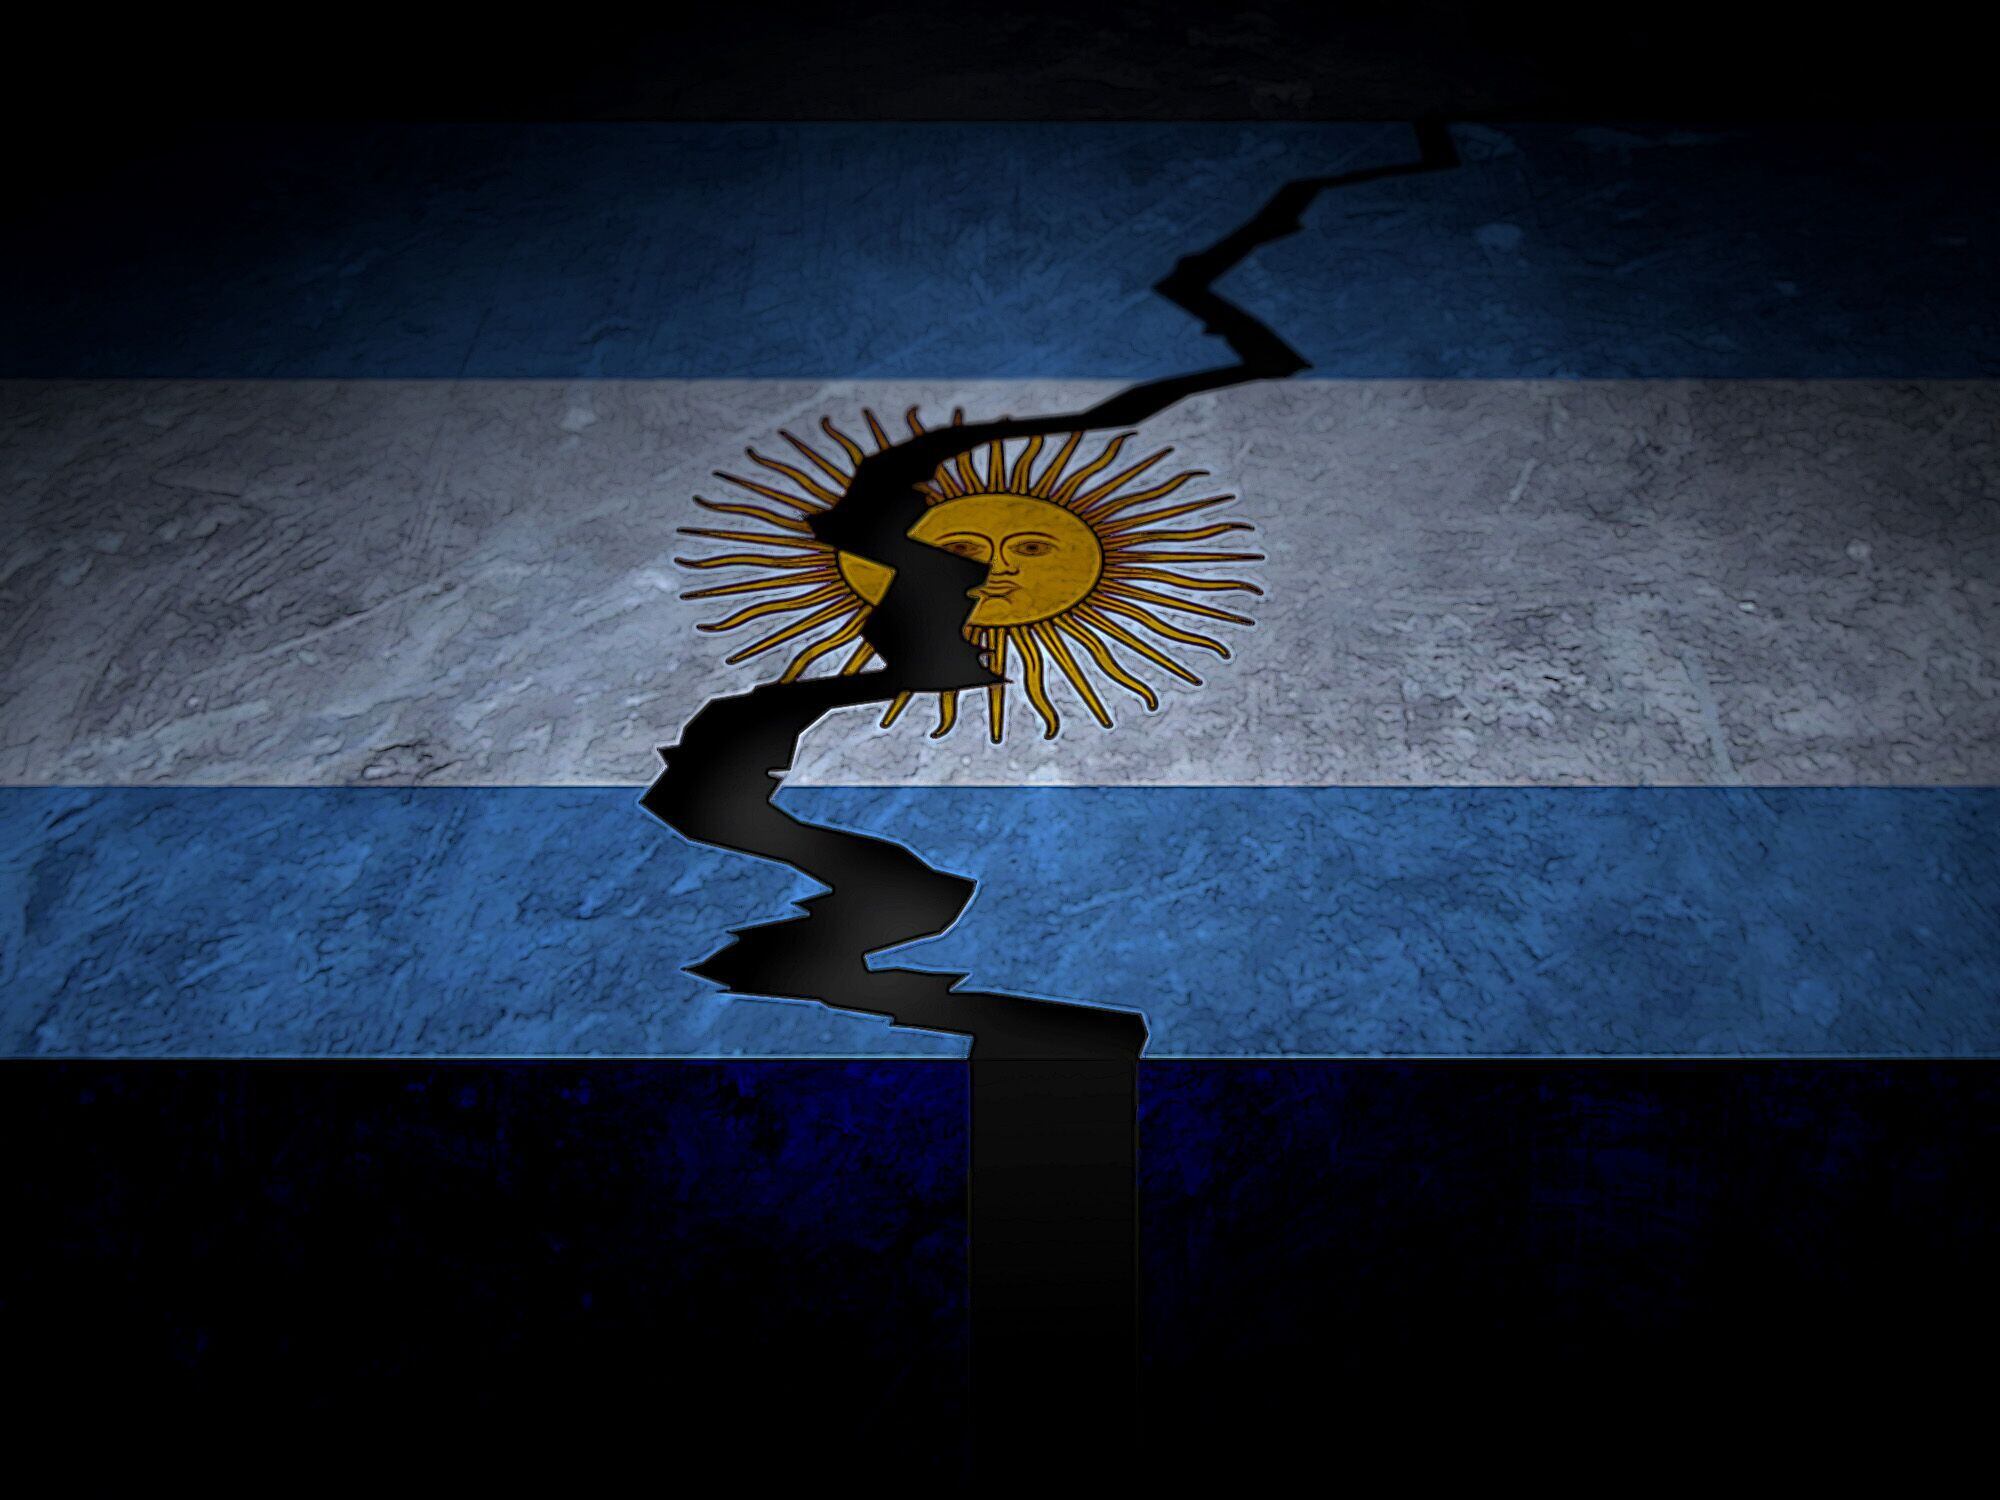 Negligencia en políticas detrás de la inflación en Argentina